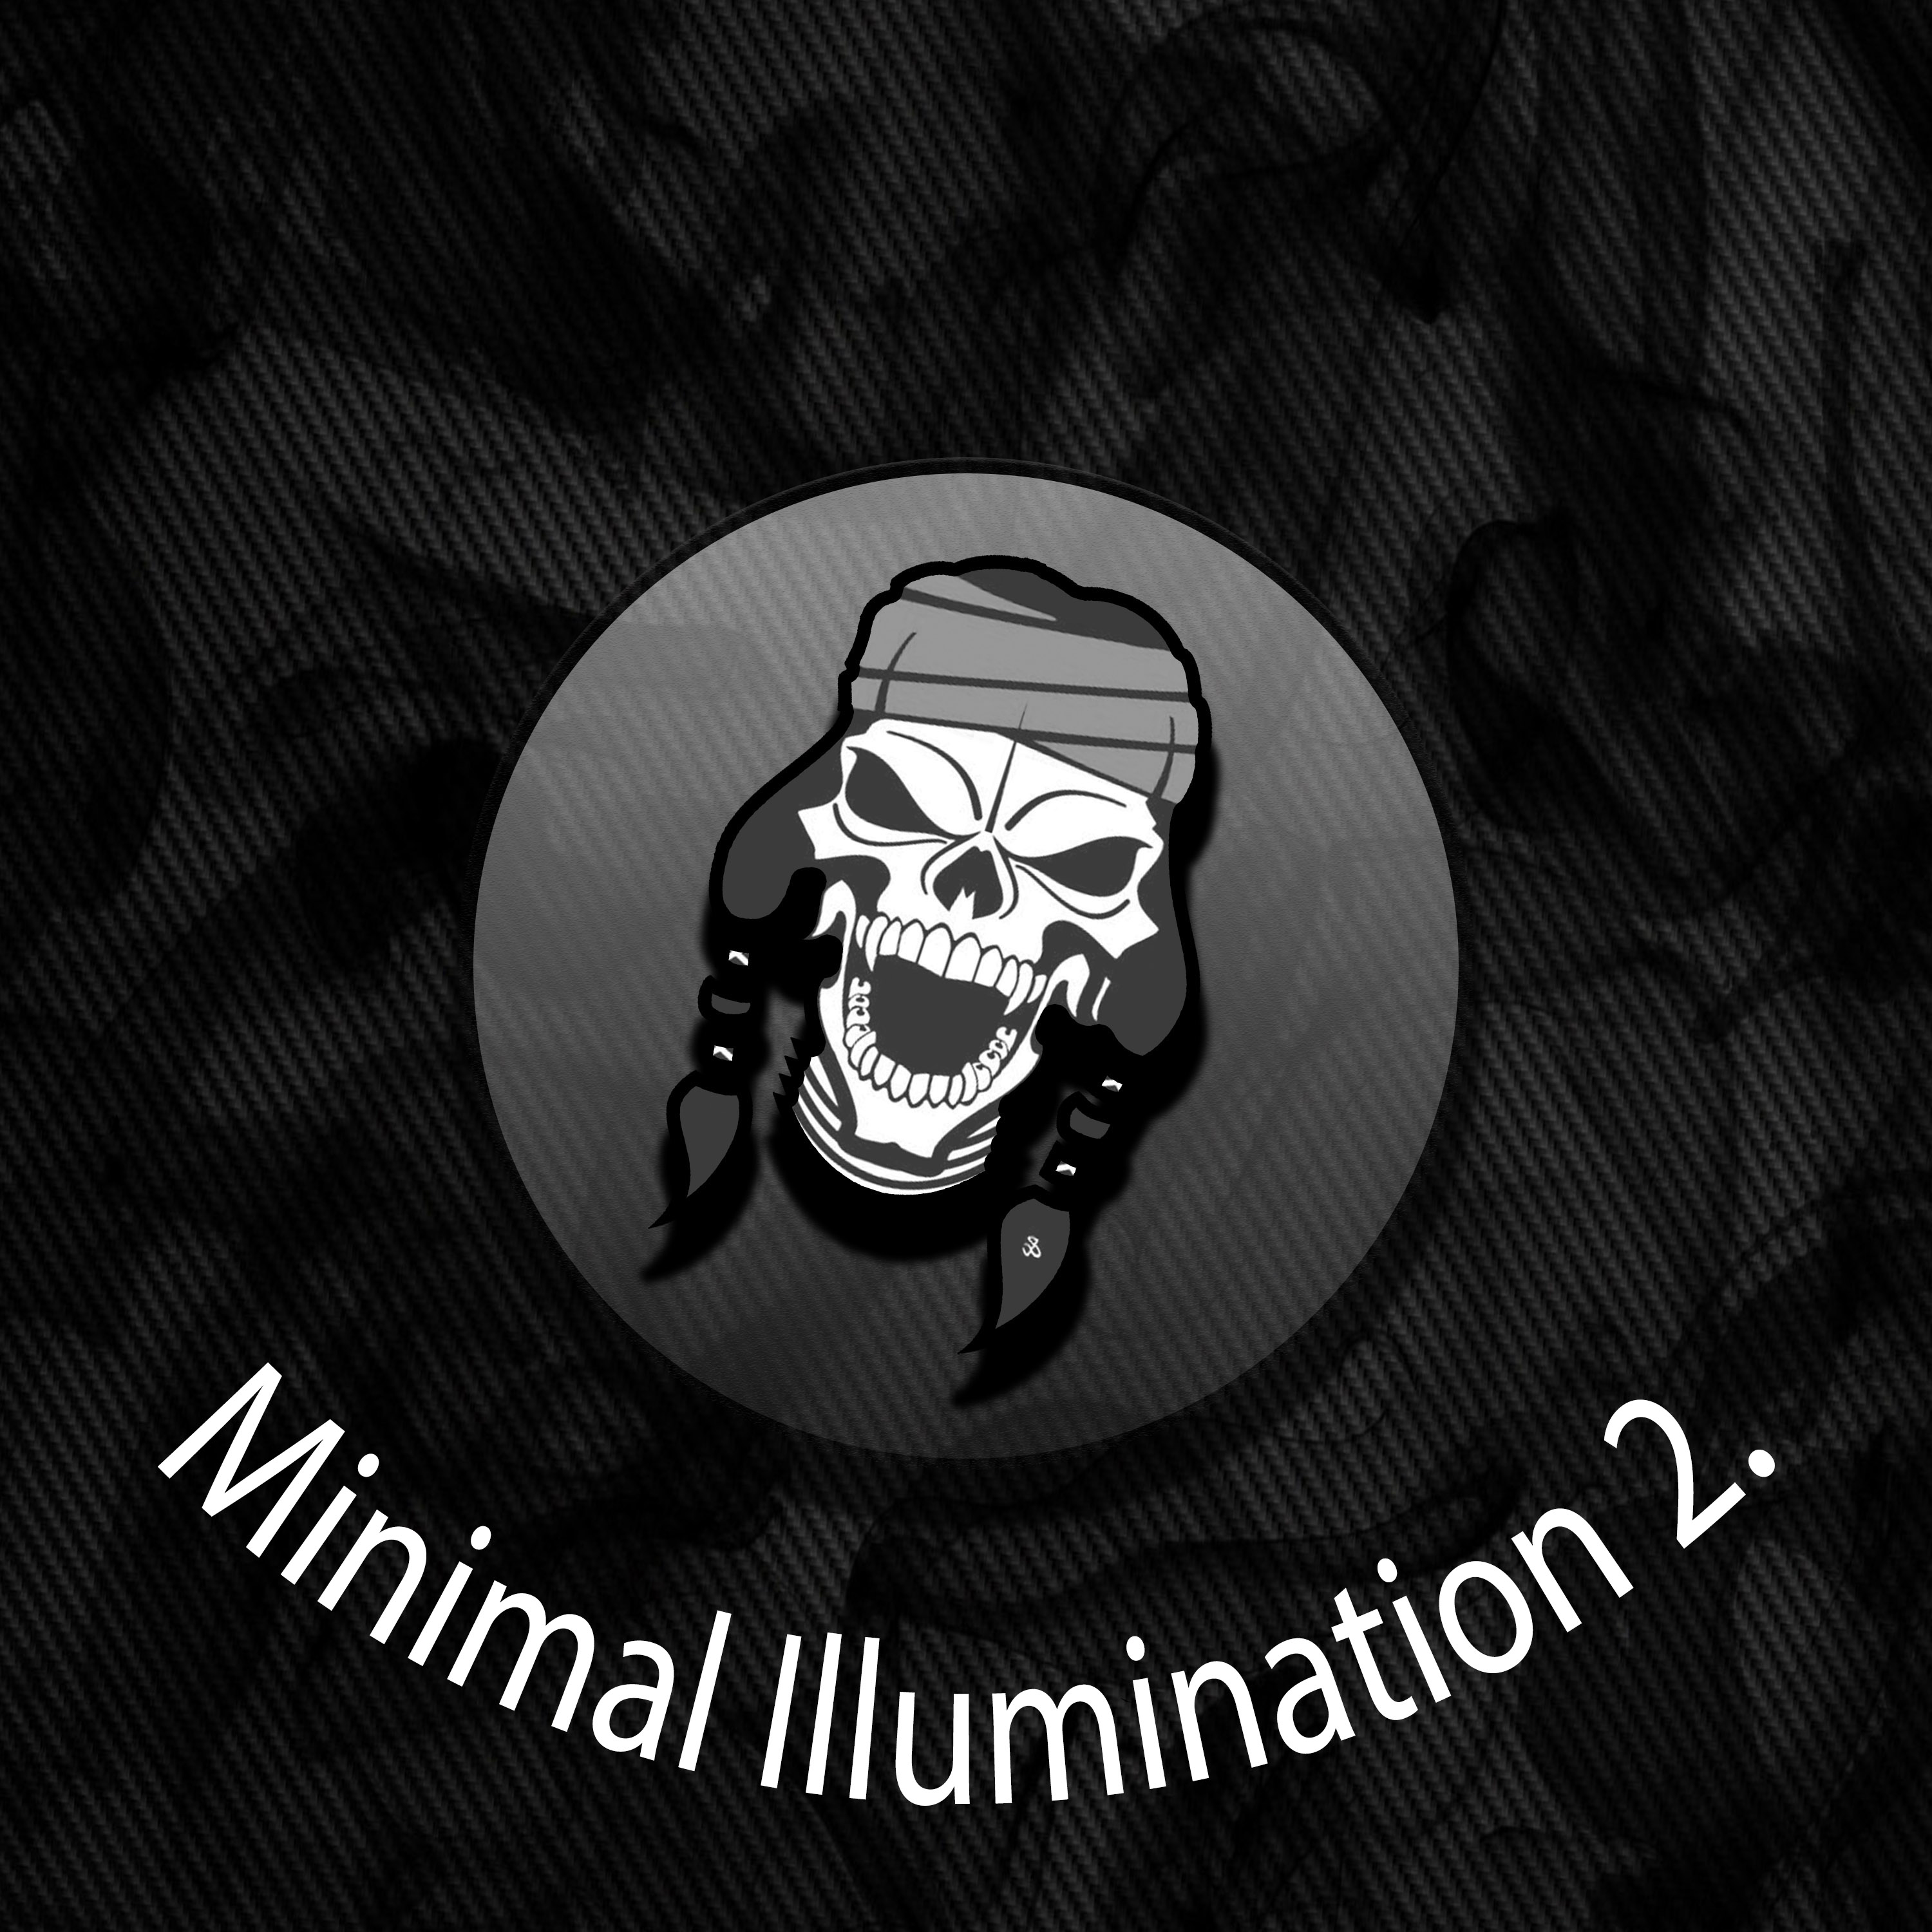 Minimal Illumination 2.